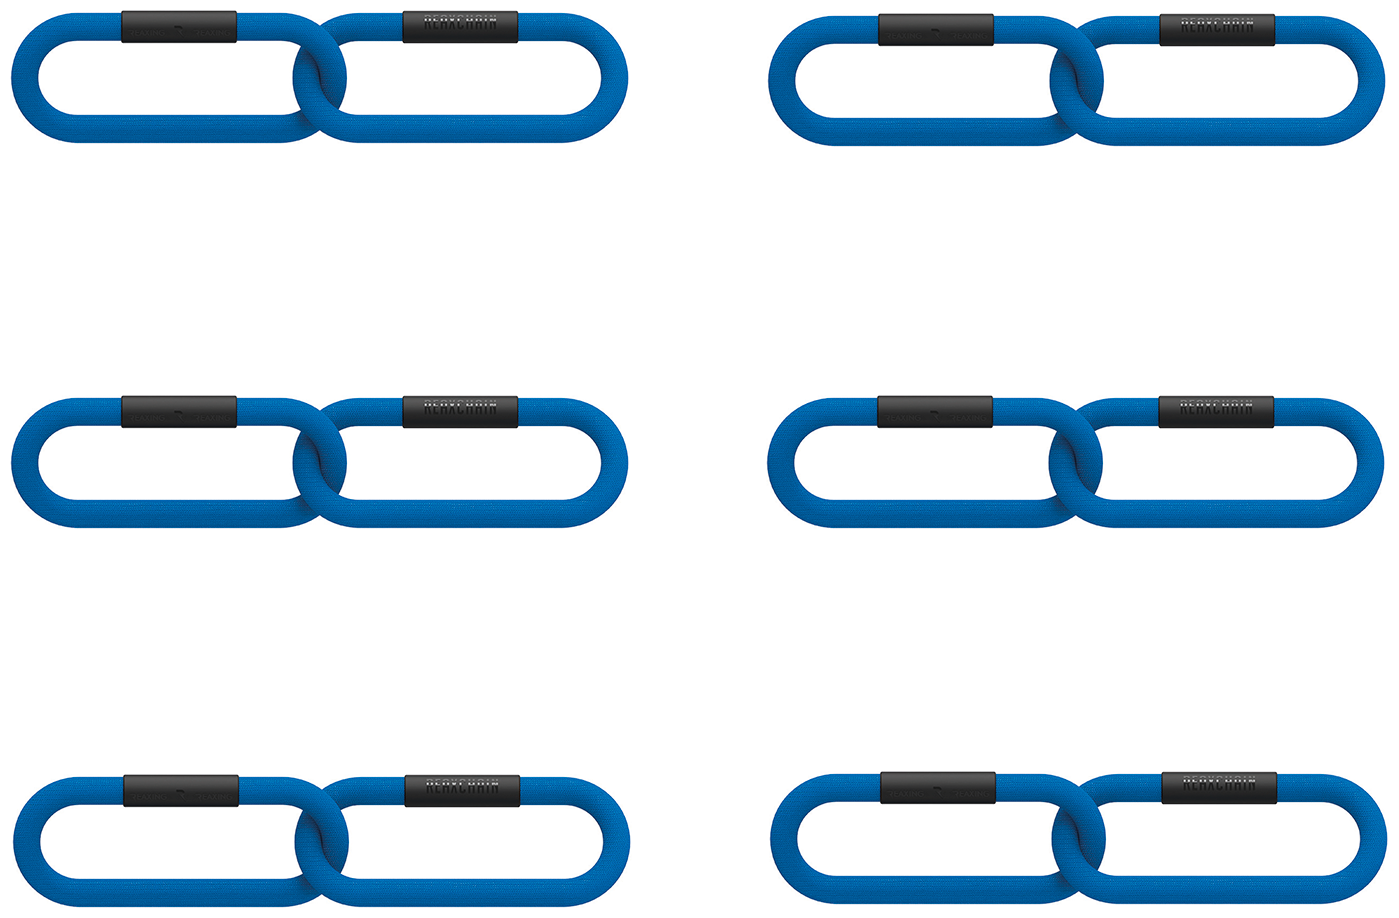 Цепи для фитнеса 2кг REAX CHAIN (в комплекте 6 цепей по 2 звена), цвет: синий